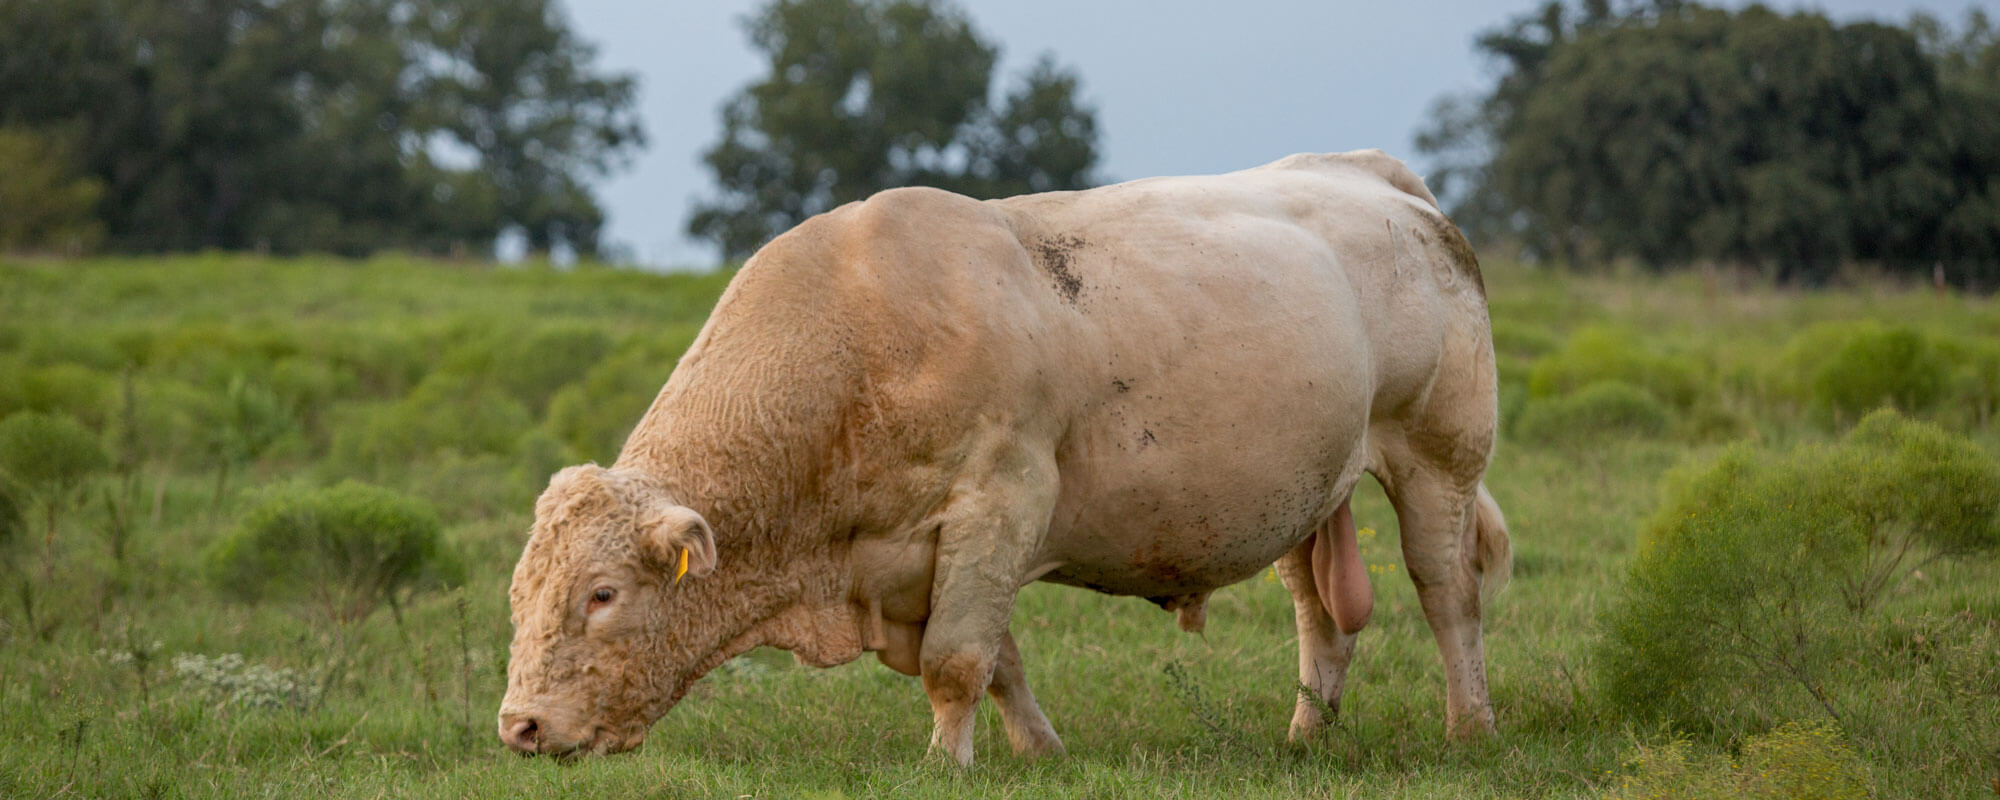 Bull grazing in field